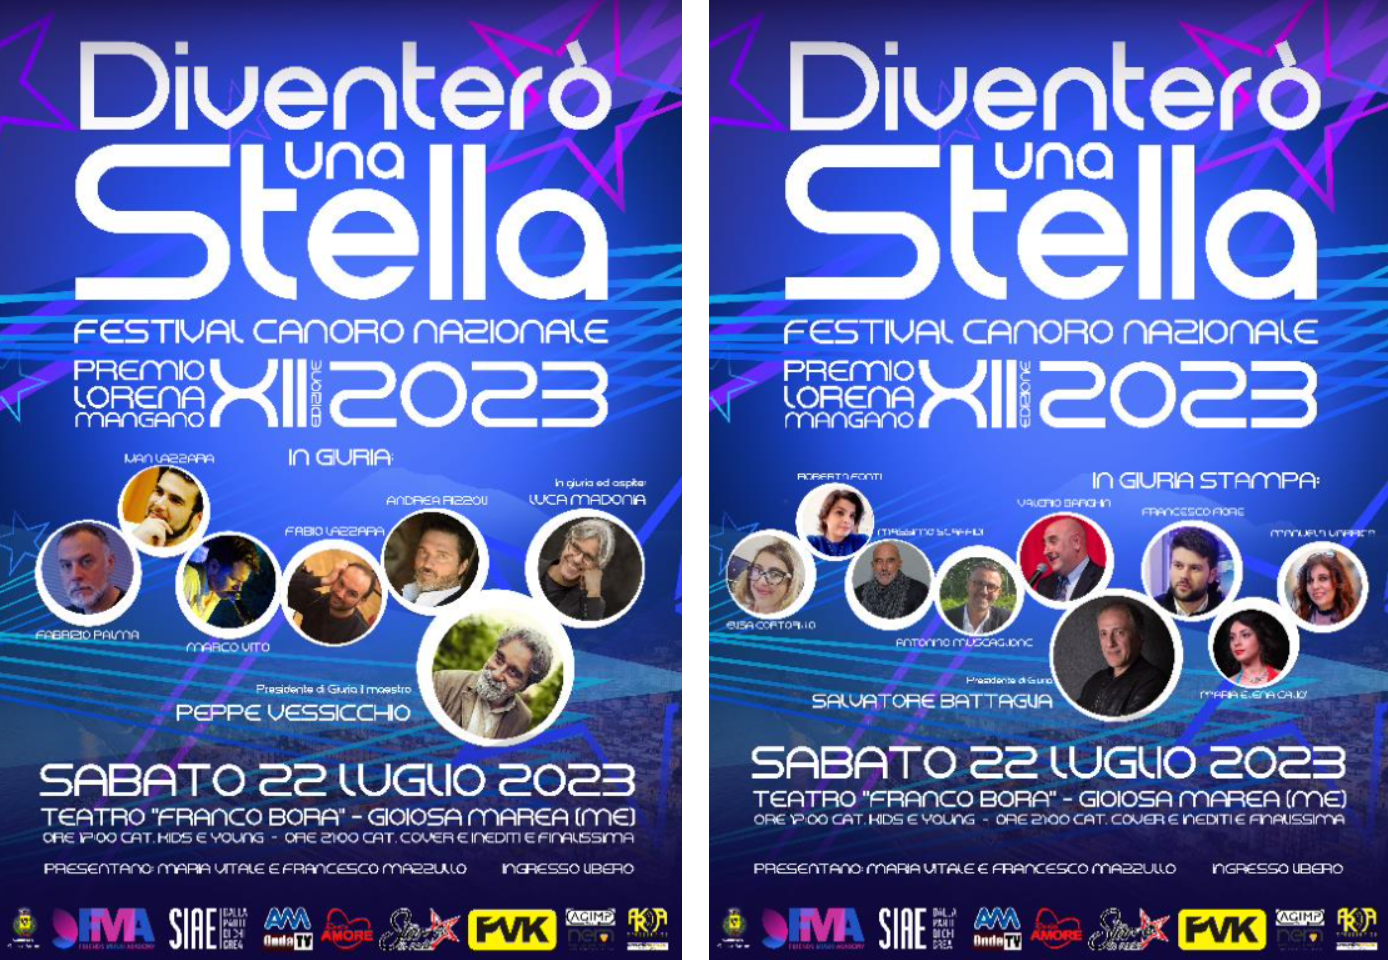 DIVENTERO-UNA-STELLA-Premio-Lorena-Mangano-2.png